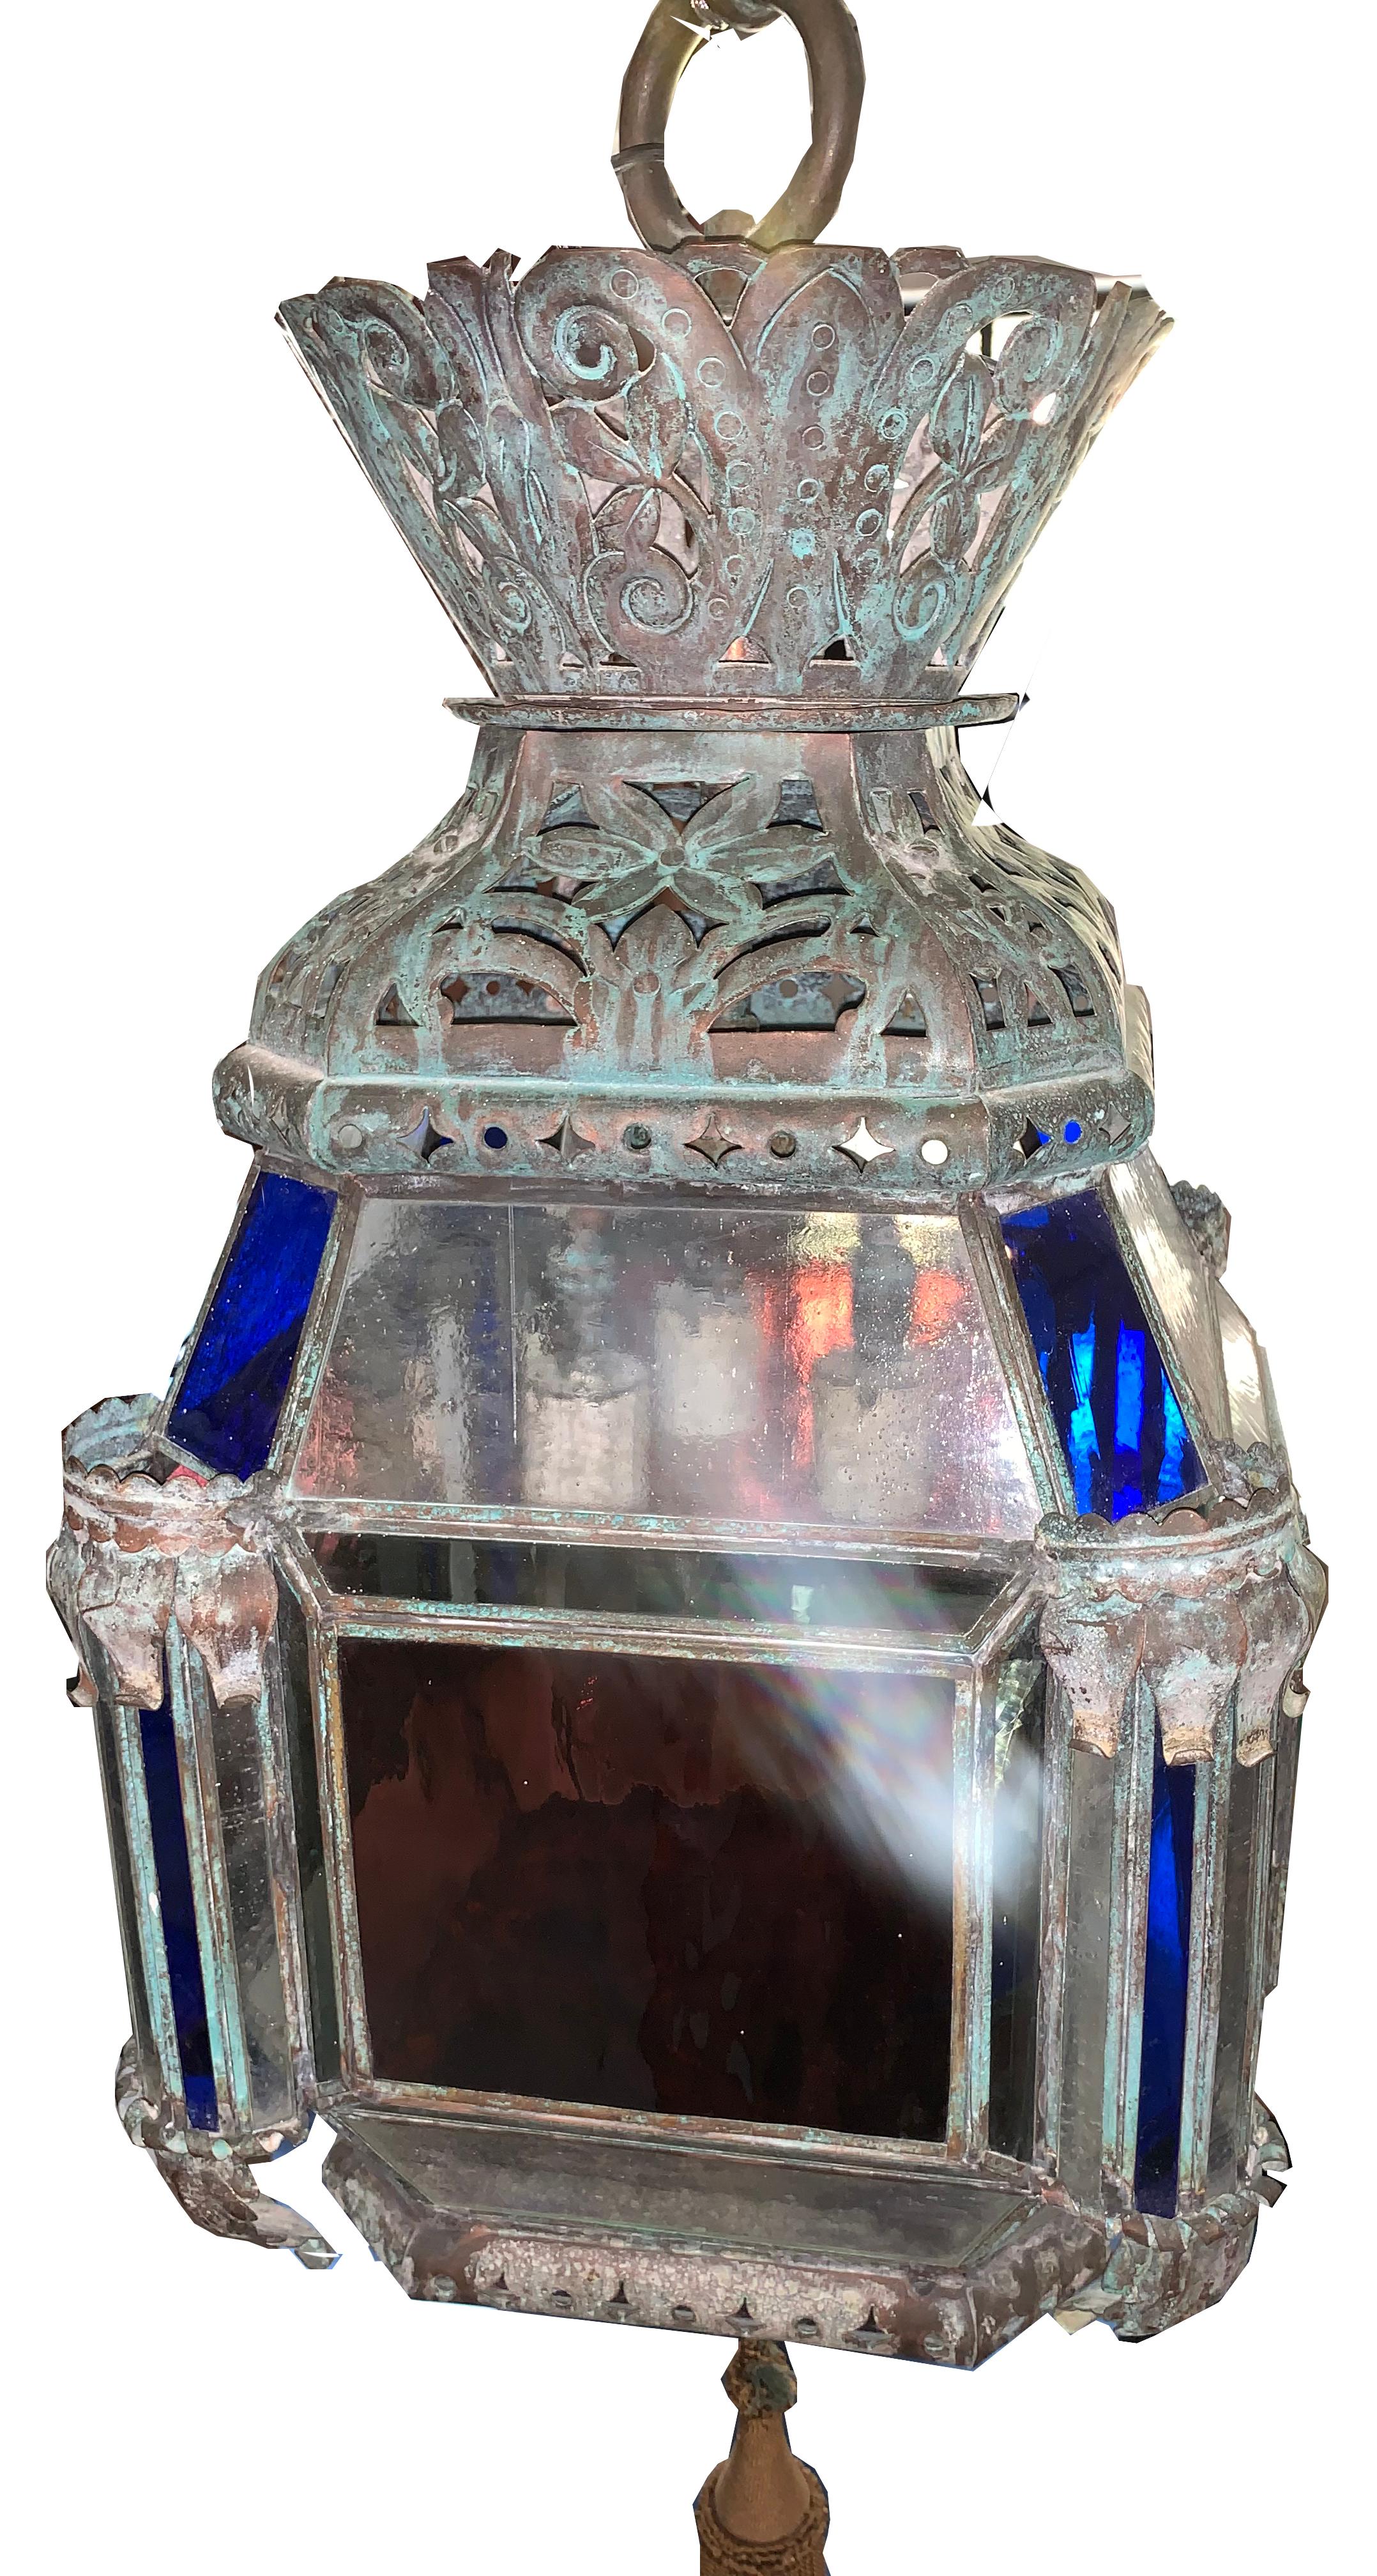 Marokkanische Leuchte aus mundgeblasenem Glas im Vintage-Stil. Das Stück hat eine patinierte Kupferoberfläche mit mundgeblasenem klaren, blauen und magentafarbenen Glas.

Eigentum des geschätzten Innenarchitekten Juan Montoya. Juan Montoya ist